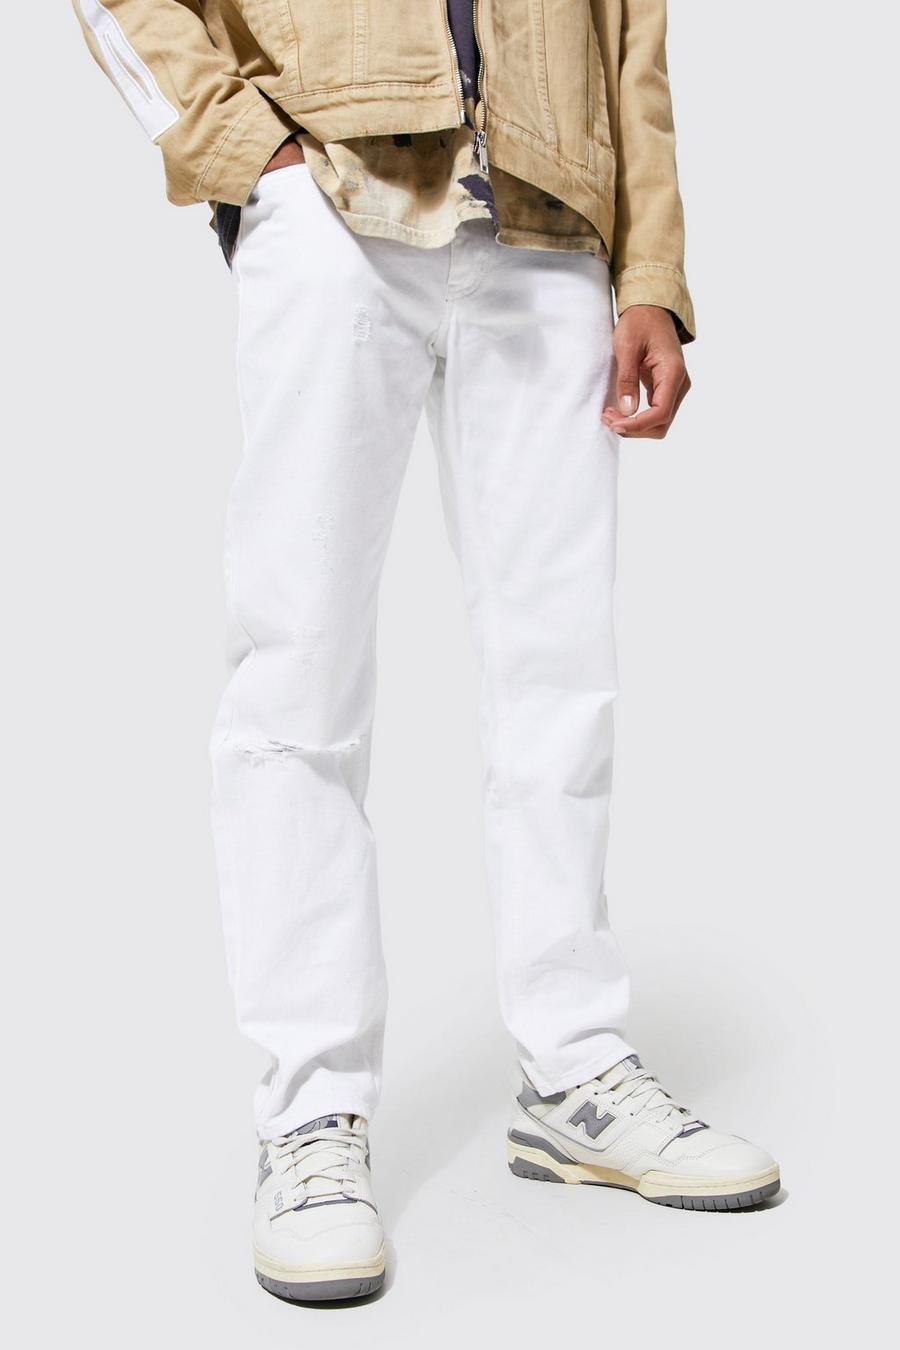 לבן white ג'ינס בגזרה ישרה עם קרעים בברך